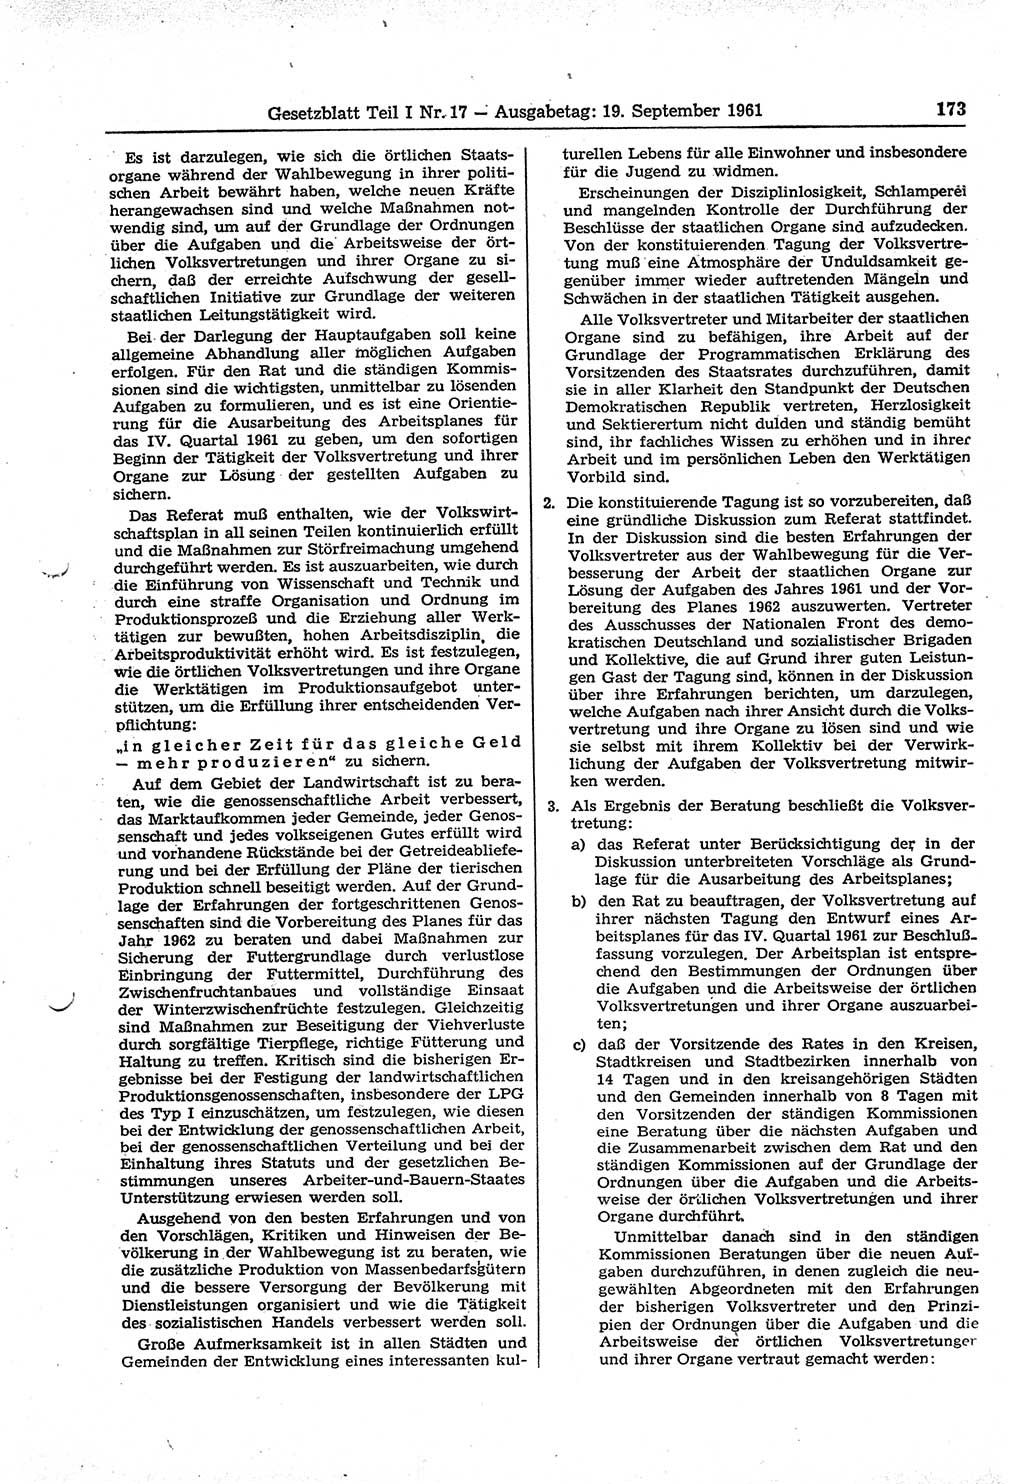 Gesetzblatt (GBl.) der Deutschen Demokratischen Republik (DDR) Teil Ⅰ 1961, Seite 173 (GBl. DDR Ⅰ 1961, S. 173)